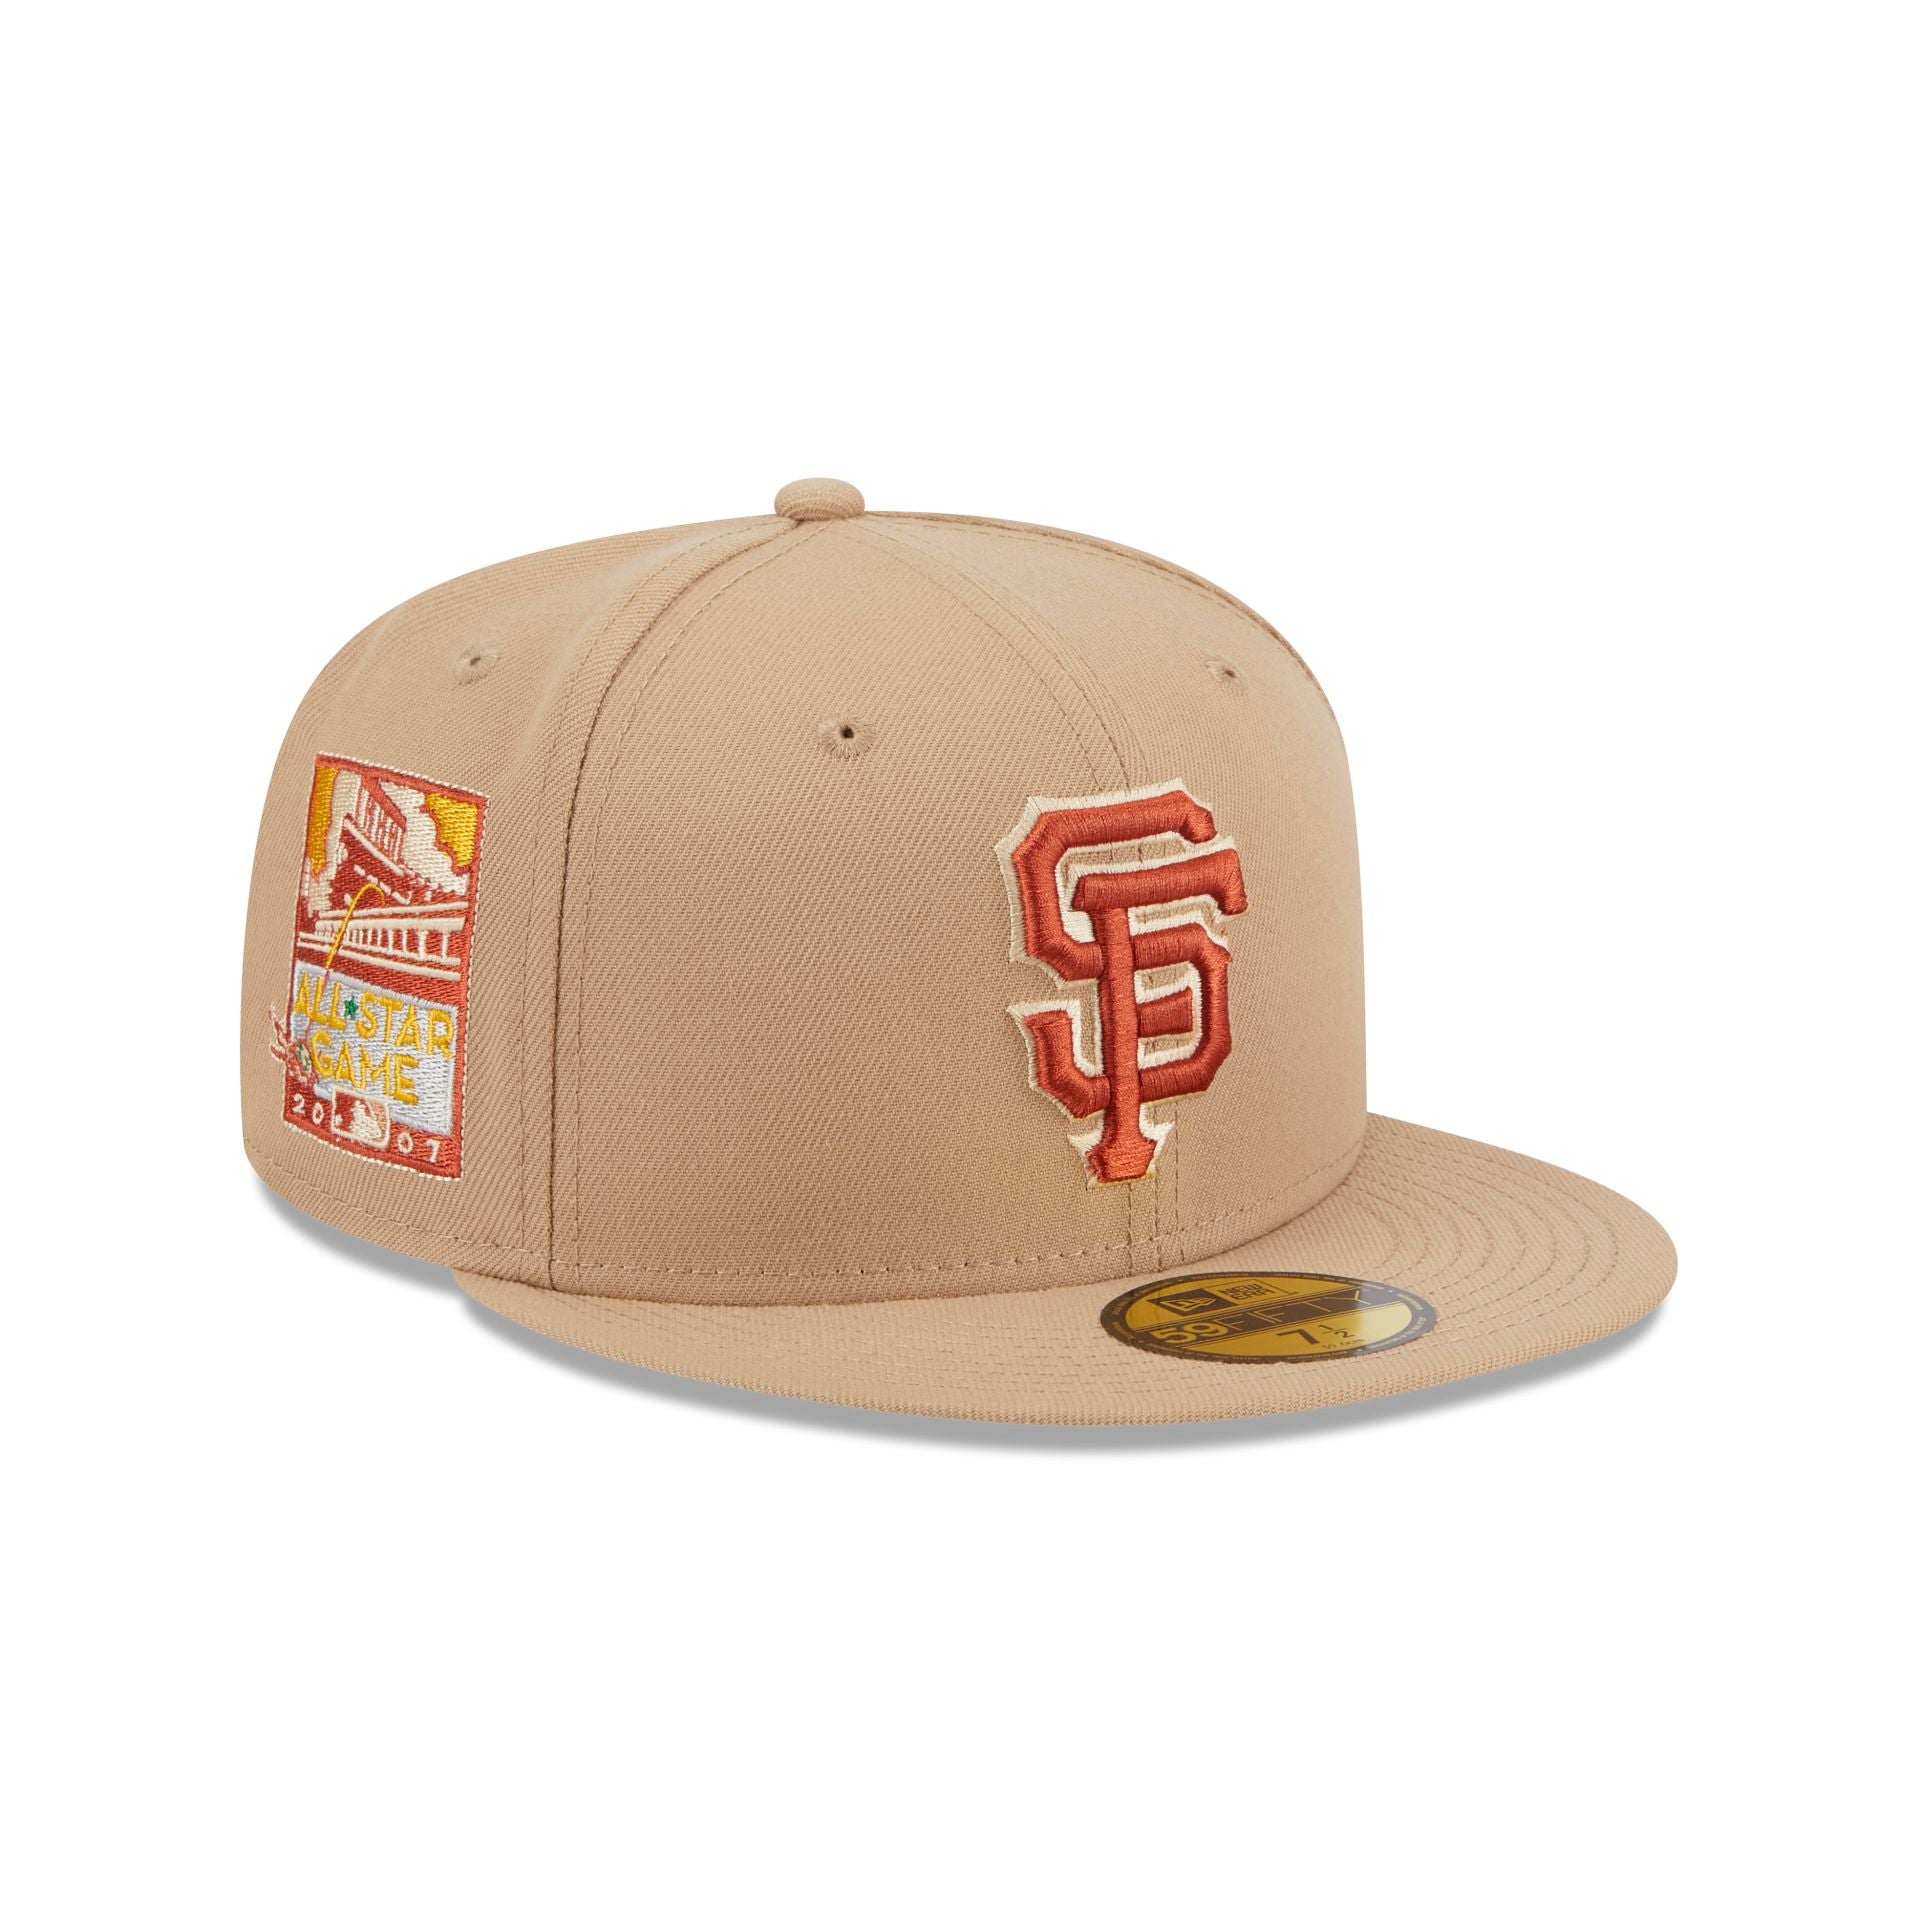 Giants Batting Practice Hats, San Francisco Giants Batting Practice Gear,  Merchandise